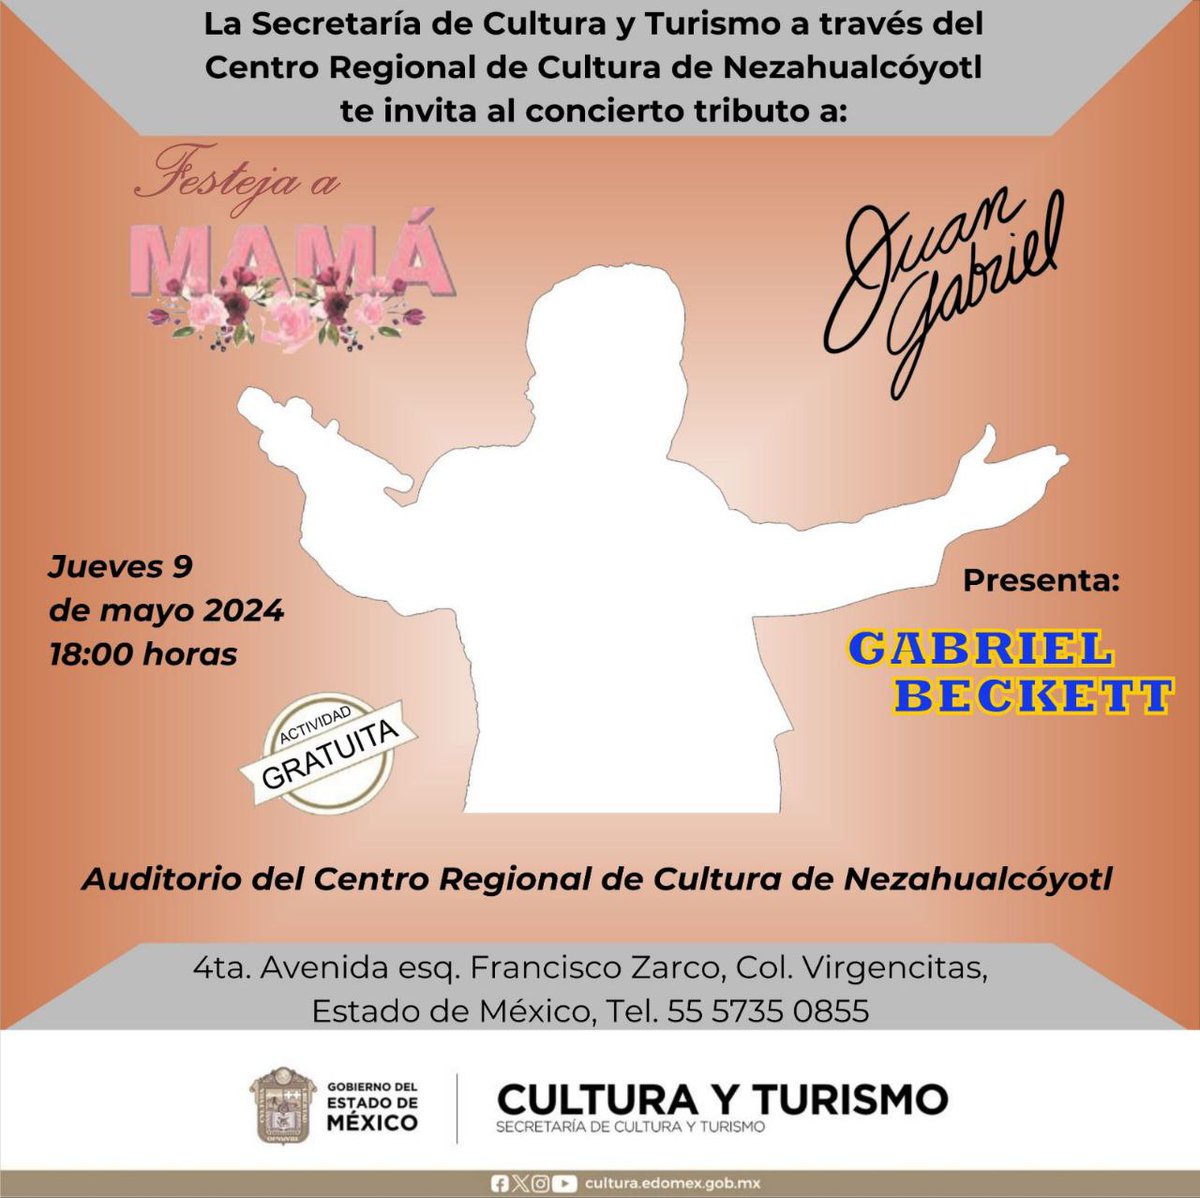 💐 Consciente a mamá en su día, los esperamos este jueves 9 de mayo en el Auditorio del Centro Regional de Cultura de #Nezahualcóyotl con el increíble concierto “Tributo a Juan Gabriel” 🎤🎶. ¡No se lo pueden perder! ⏰ 18:00 horas. 🎟️ #EntradaGratuita